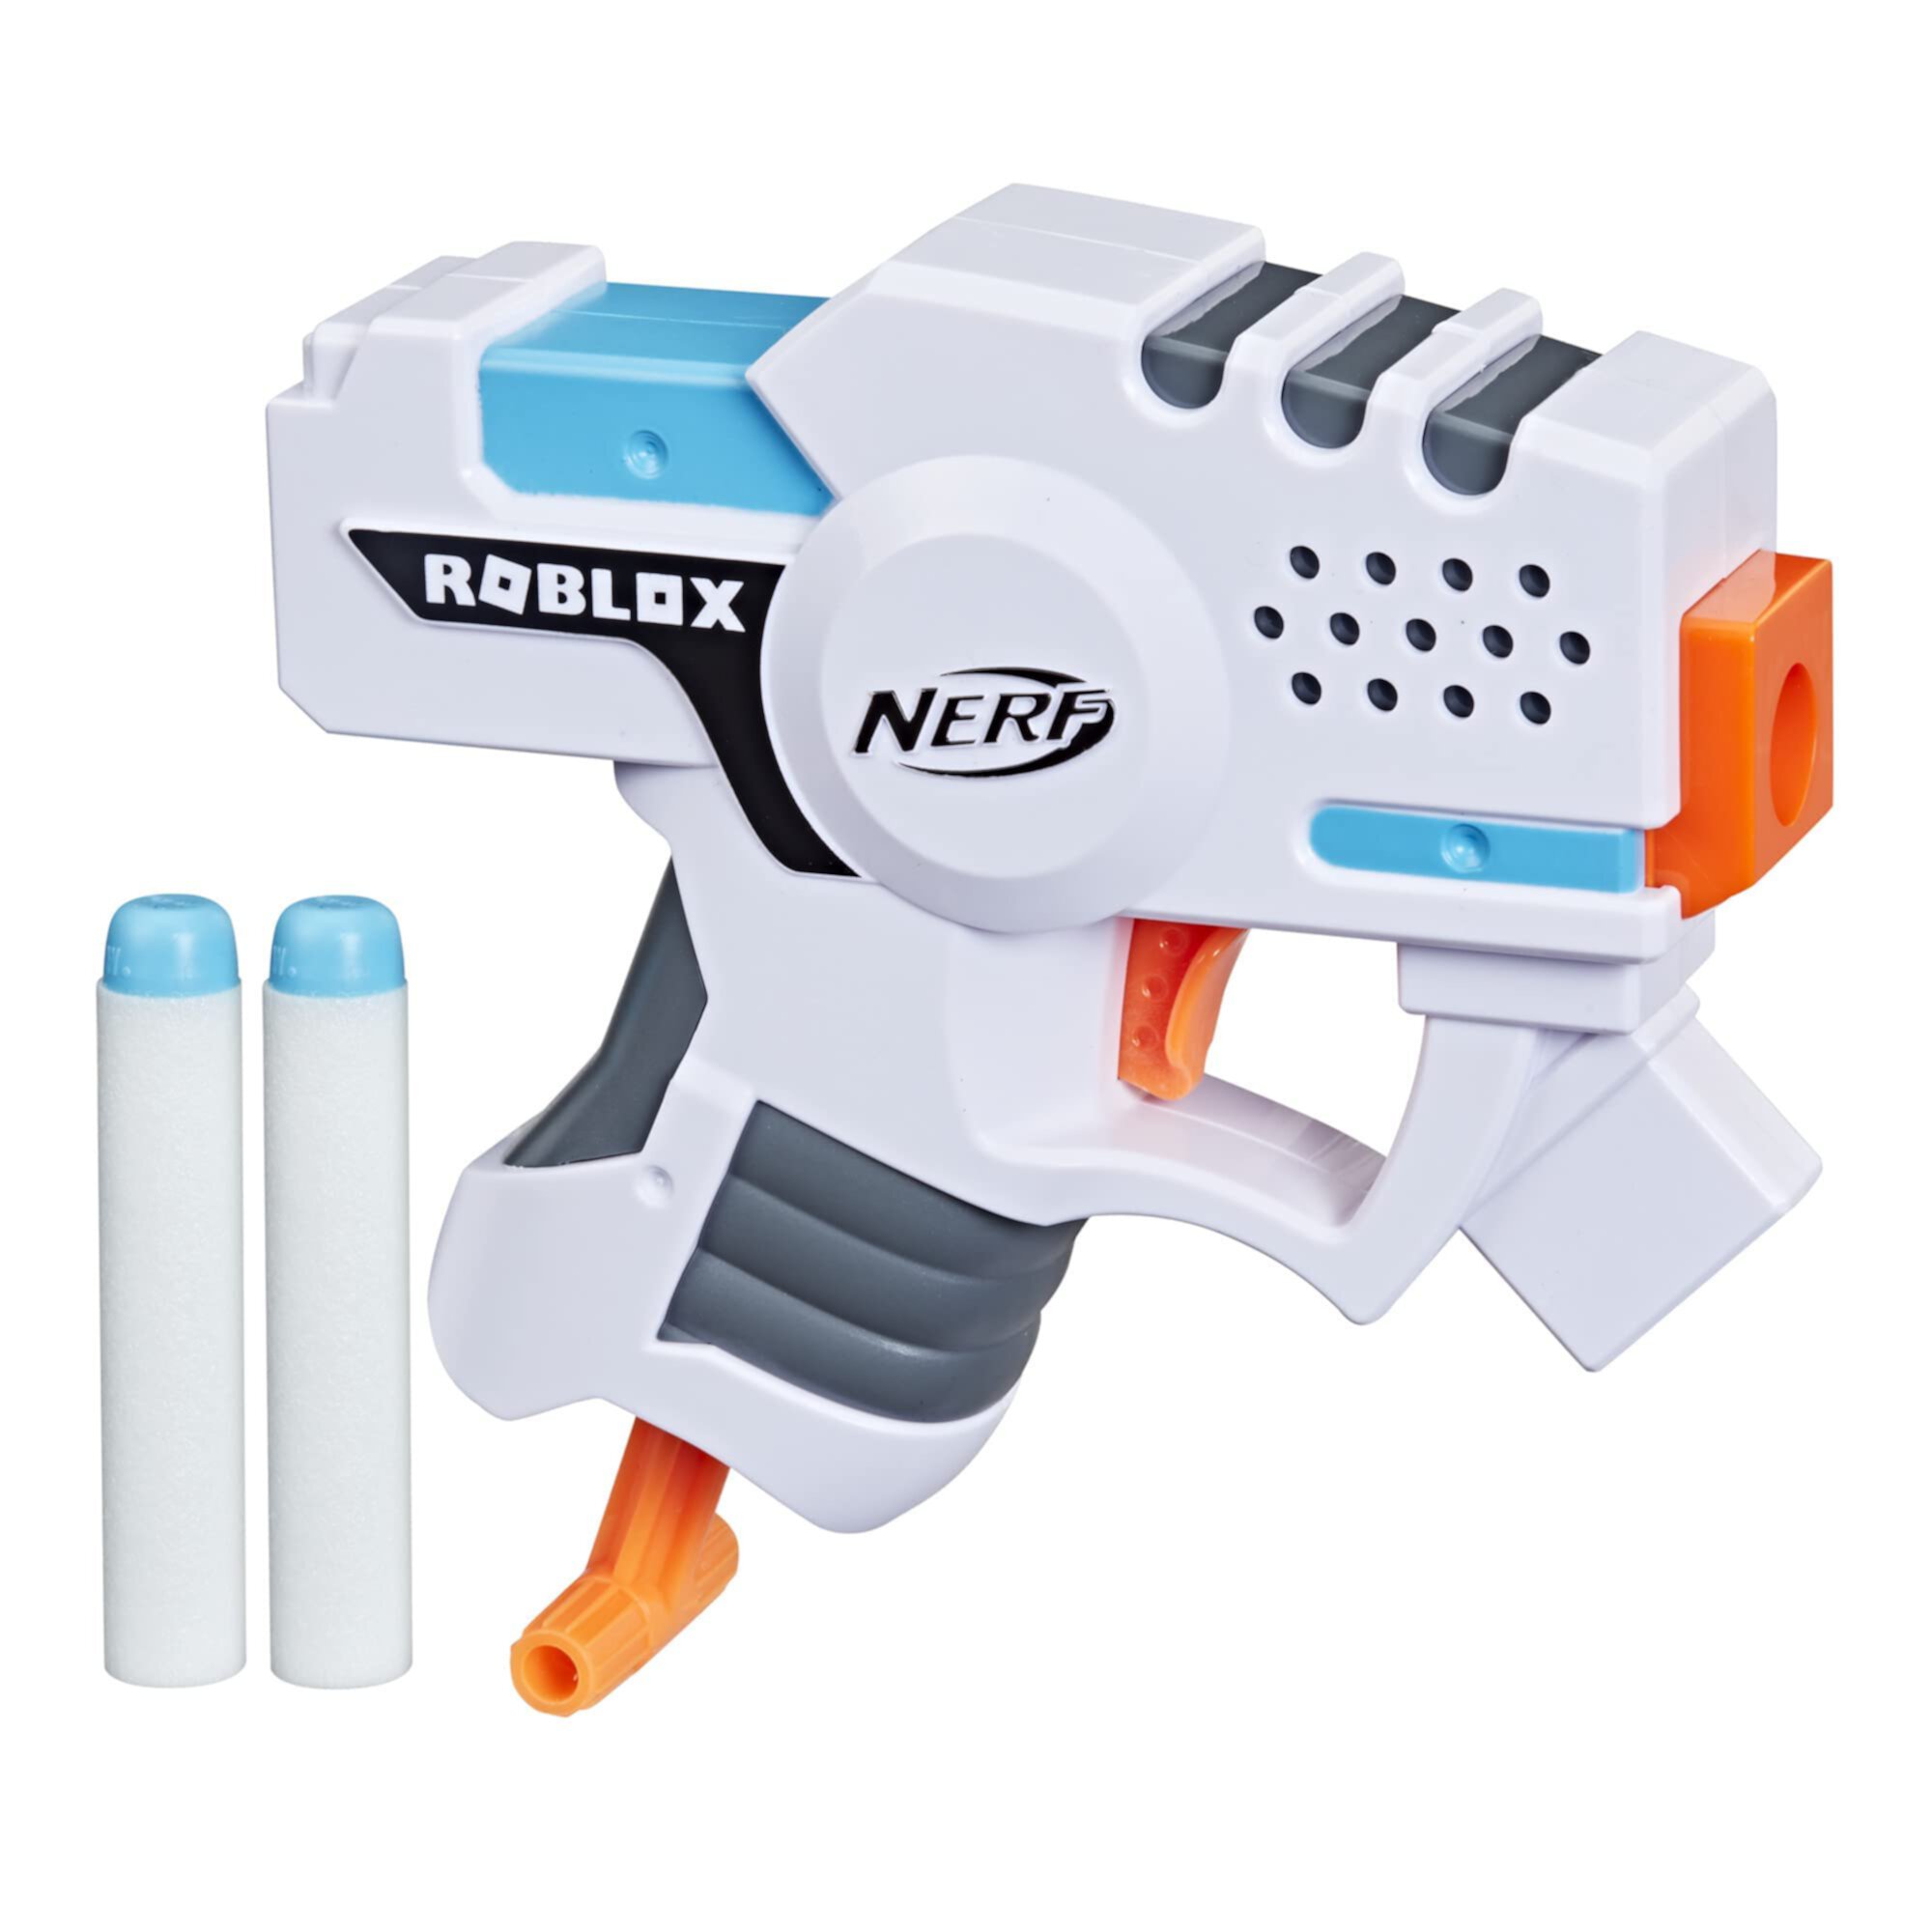 NERF Roblox Strucid: Boom Strike Dart Blaster, выдвижная рукоятка заправки, 2 элитных дротика, код для разблокировки виртуального предмета в игре, белый Nerf